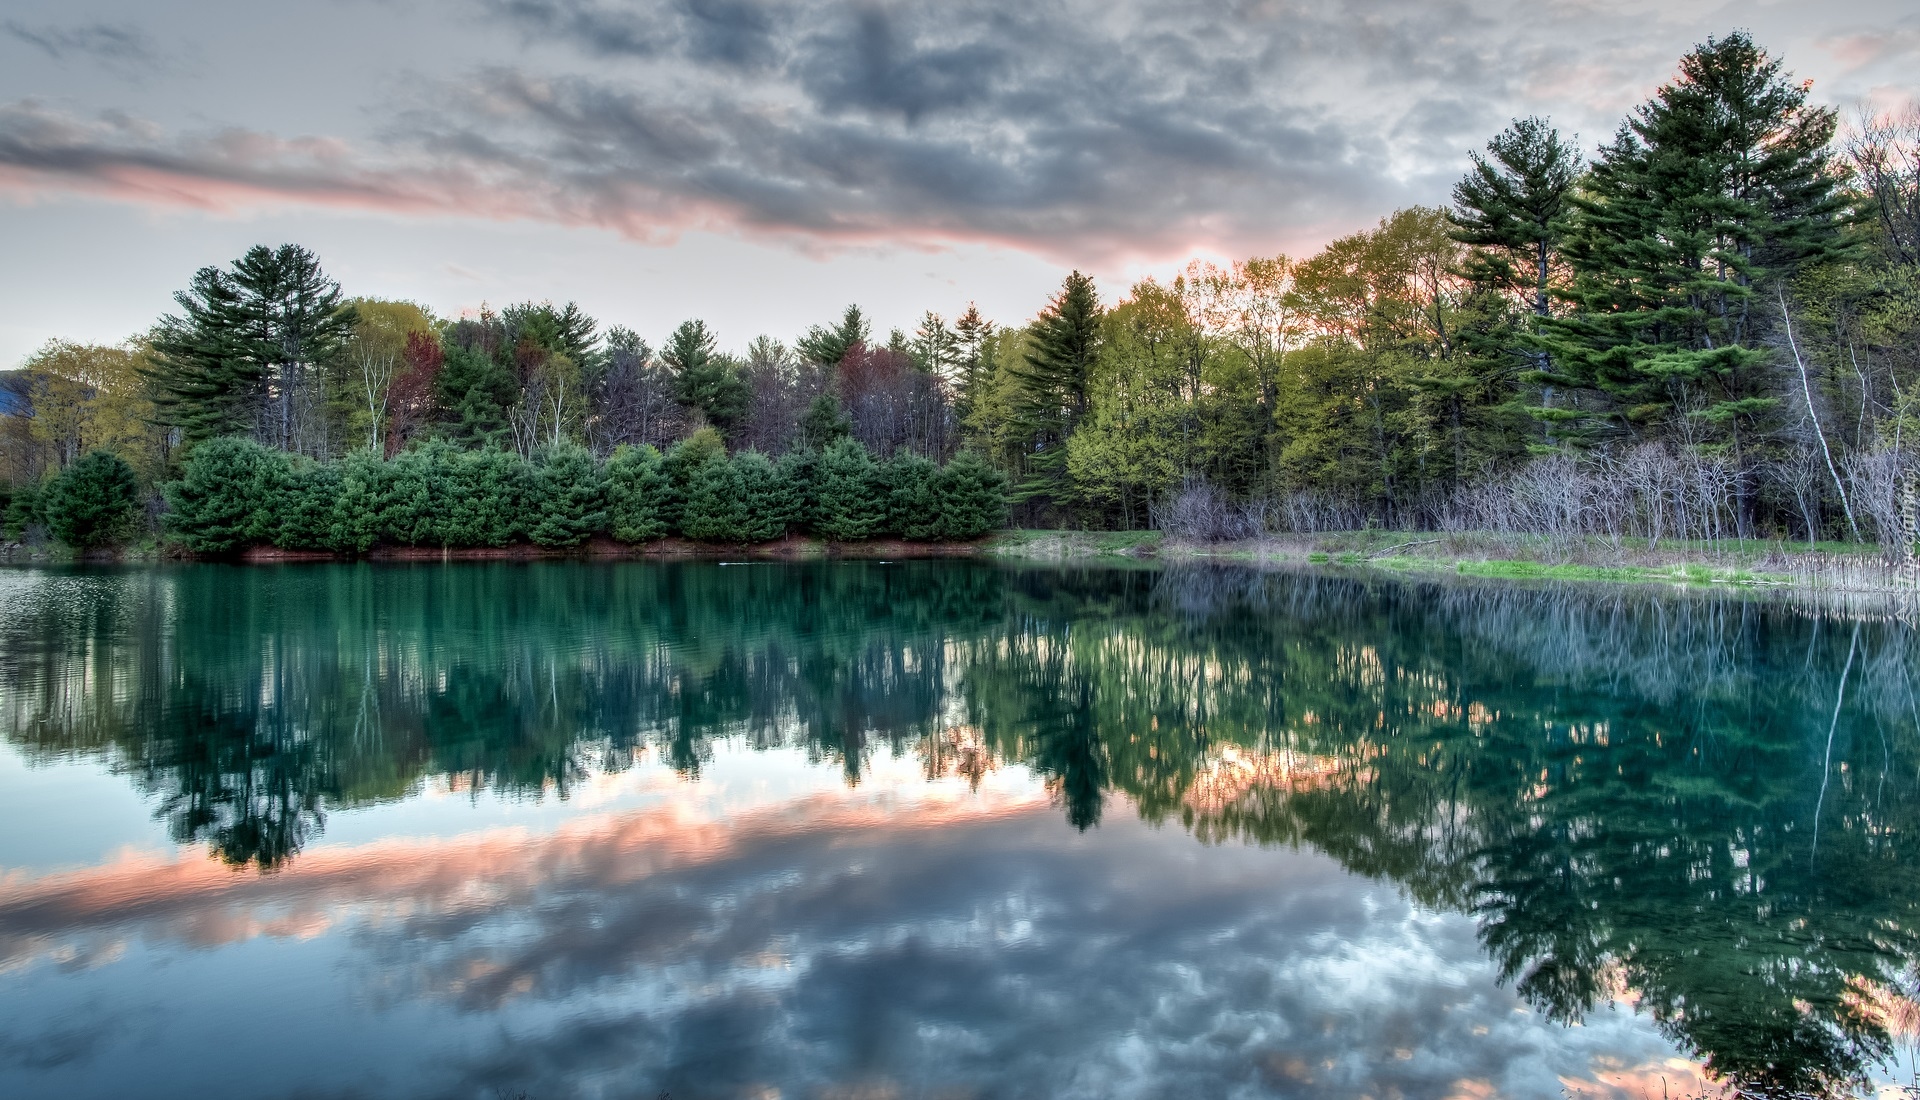 Staw, Thorne Pond, Drzewa, Chmury, Odbicie, Bartlett, Stan New Hampshire, Stany Zjednoczone